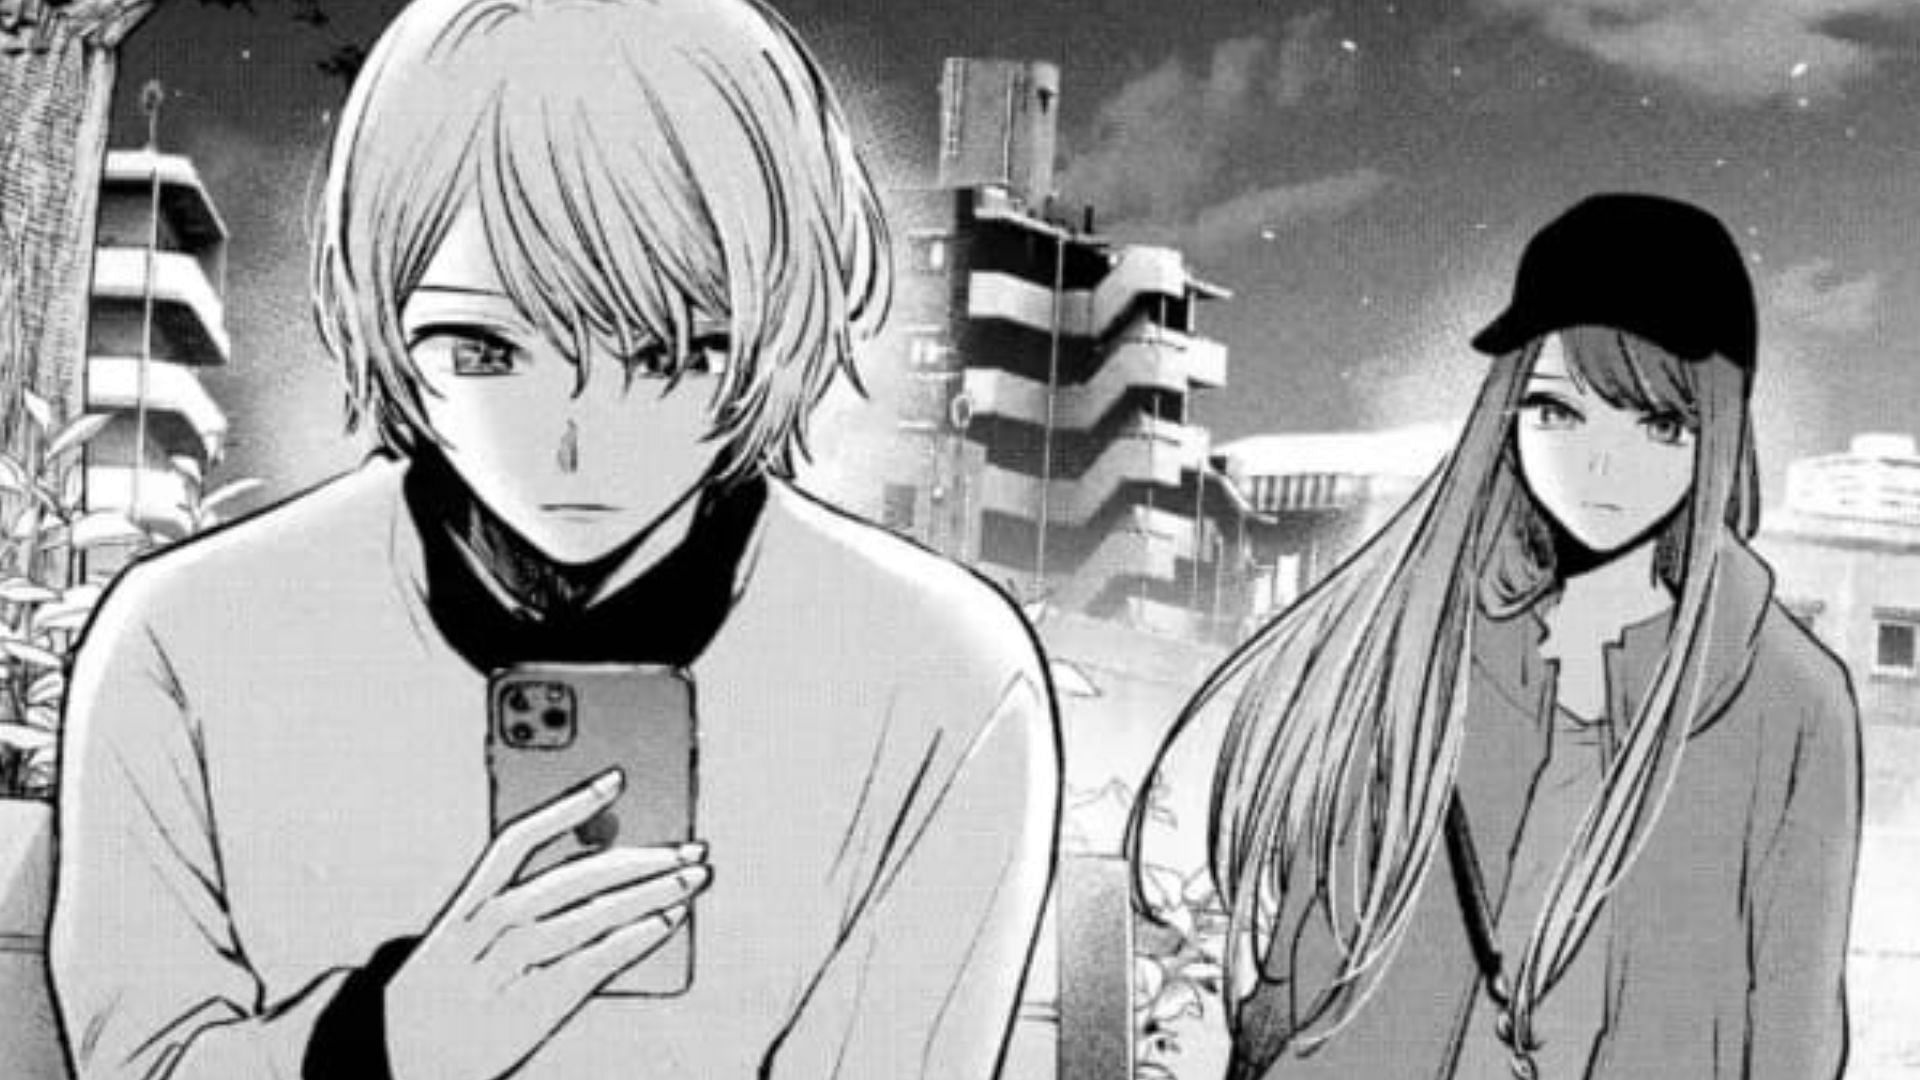 Aqua and Akane as seen in the manga (Image via Shueisha)